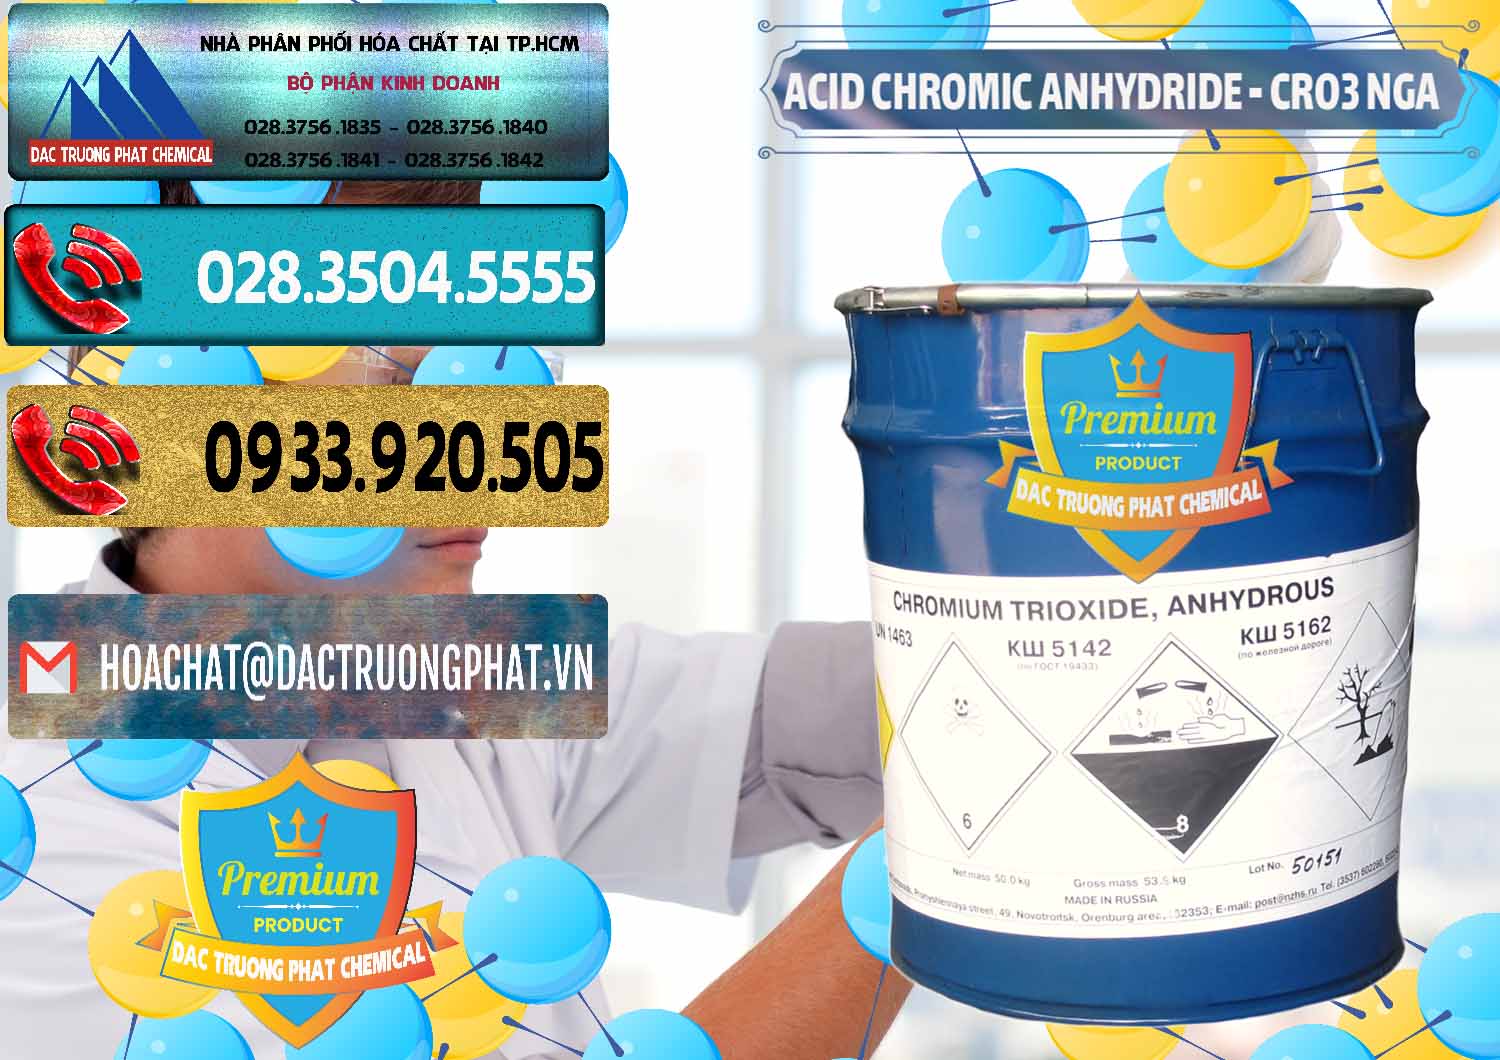 Công ty chuyên kinh doanh và bán Acid Chromic Anhydride - Cromic CRO3 Nga Russia - 0006 - Đơn vị cung ứng & phân phối hóa chất tại TP.HCM - hoachatdetnhuom.com